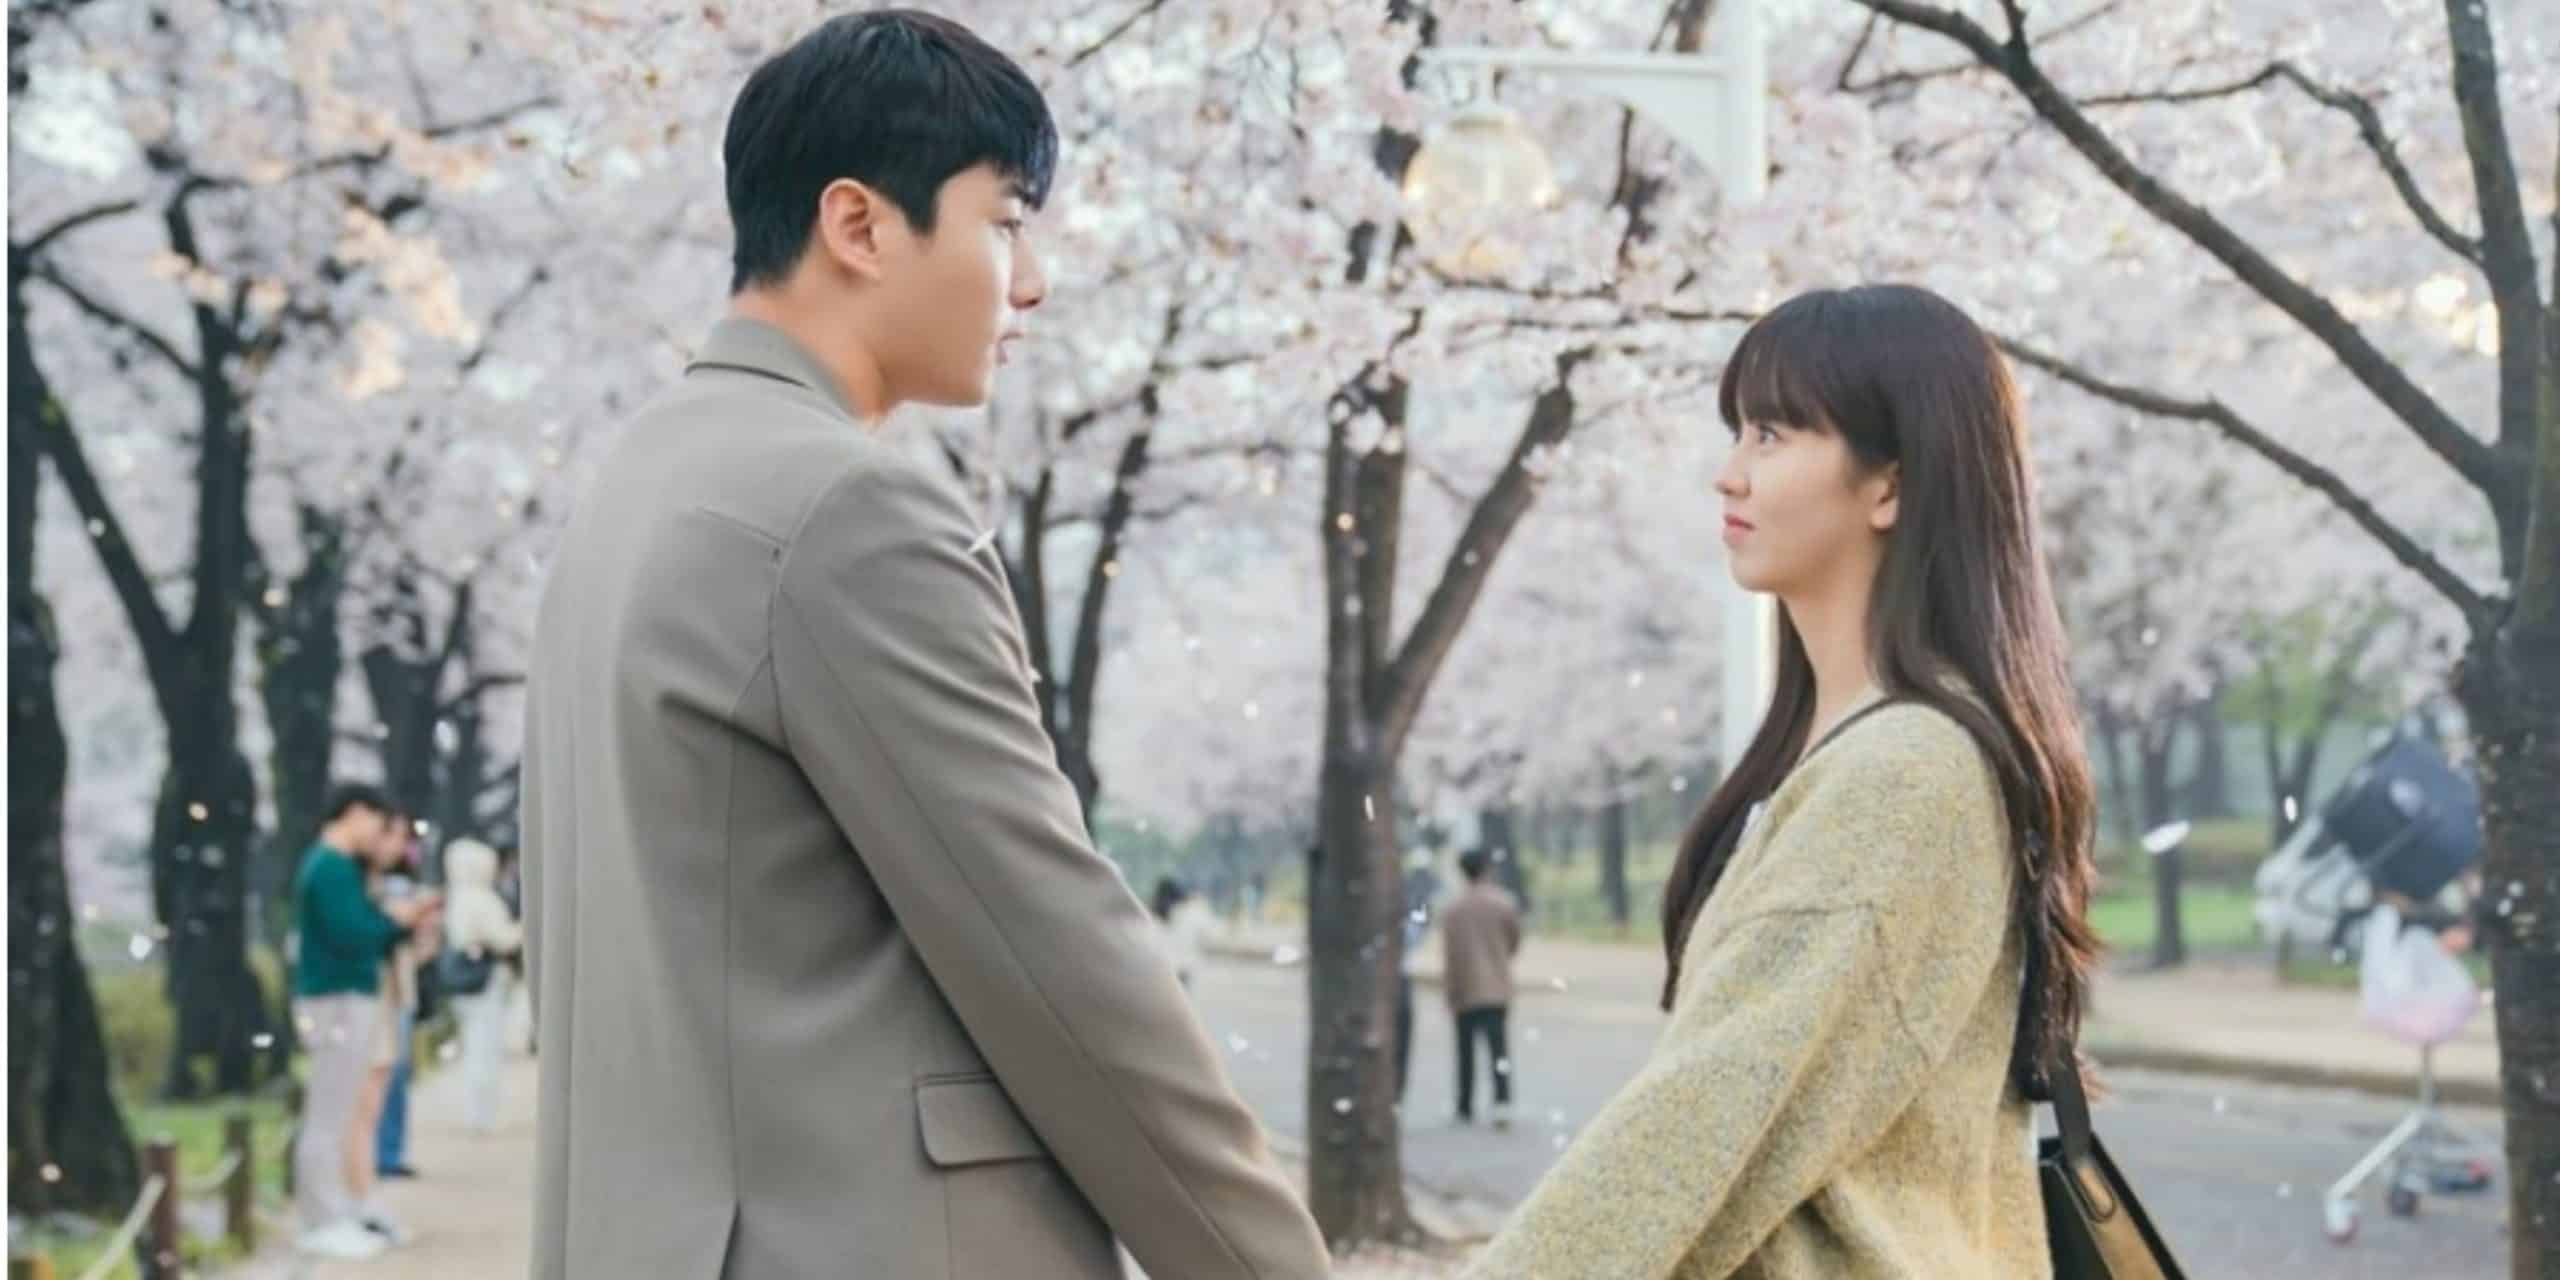 Korean Romance Drama My Lovely Liar Episode 2 Synopsis